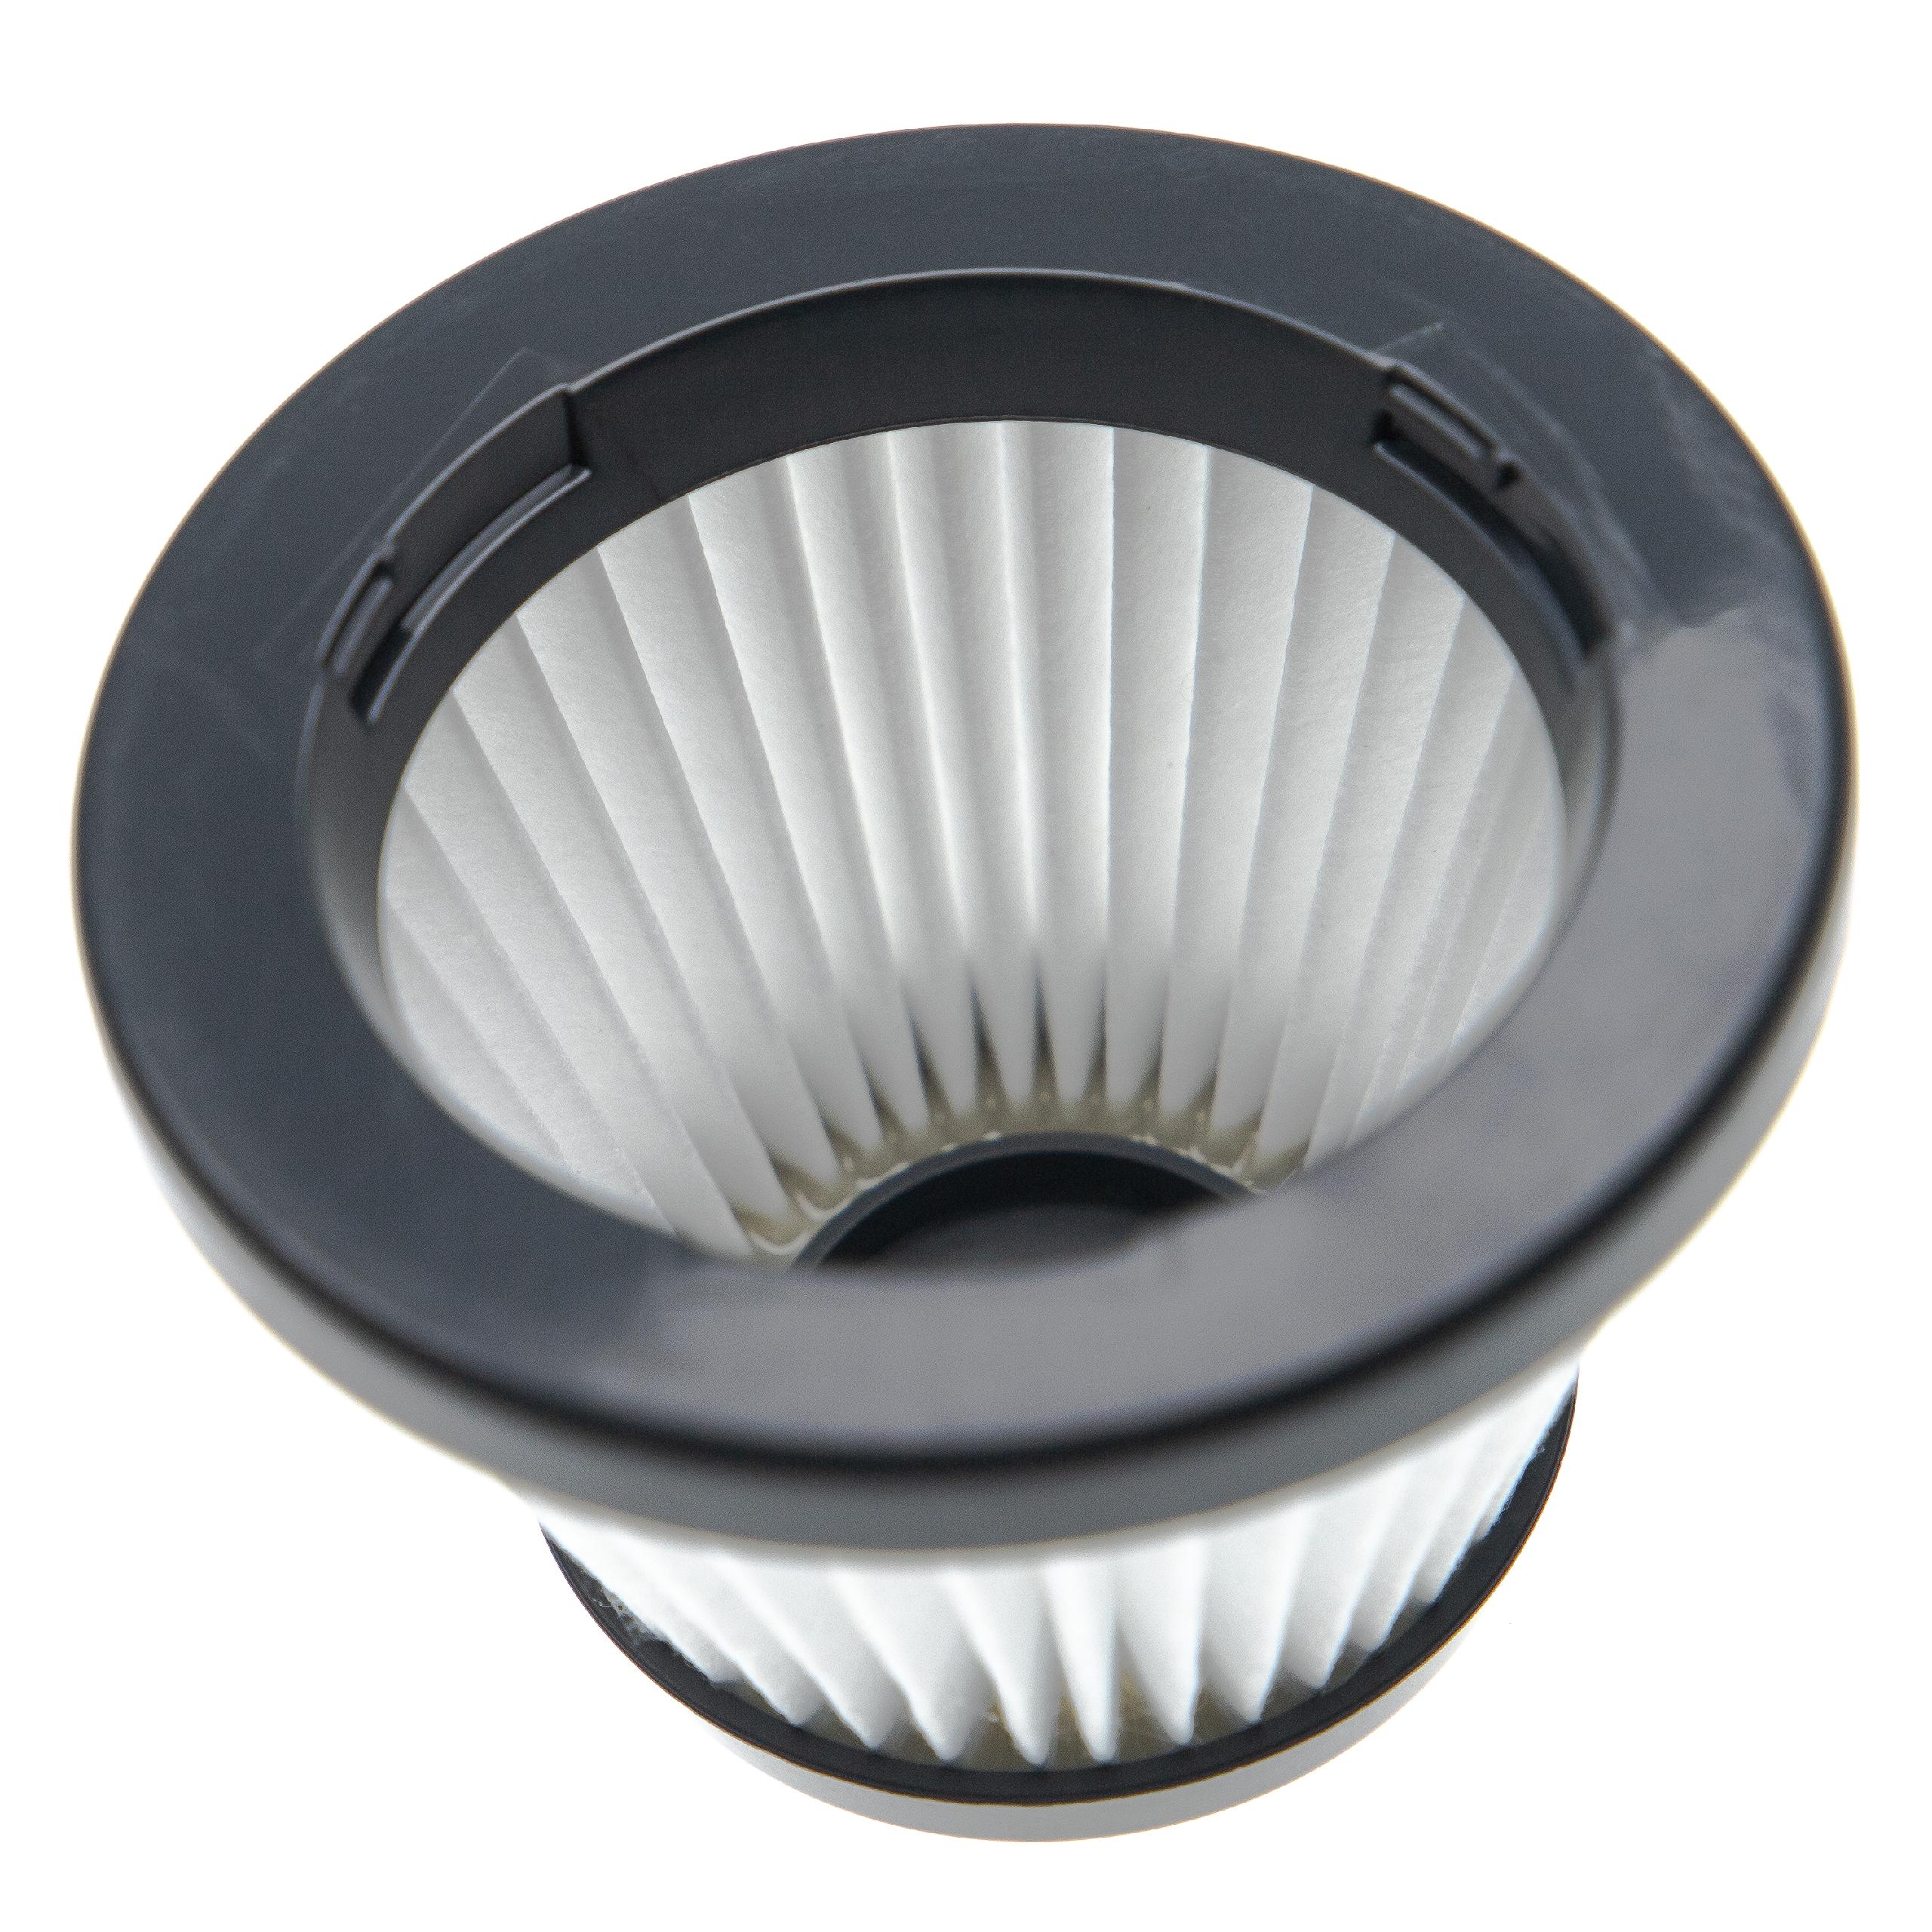 Filtro sostituisce Philips 432200493471, CRP788 per aspirapolvere - filtro HEPA, nero / bianco / grigio